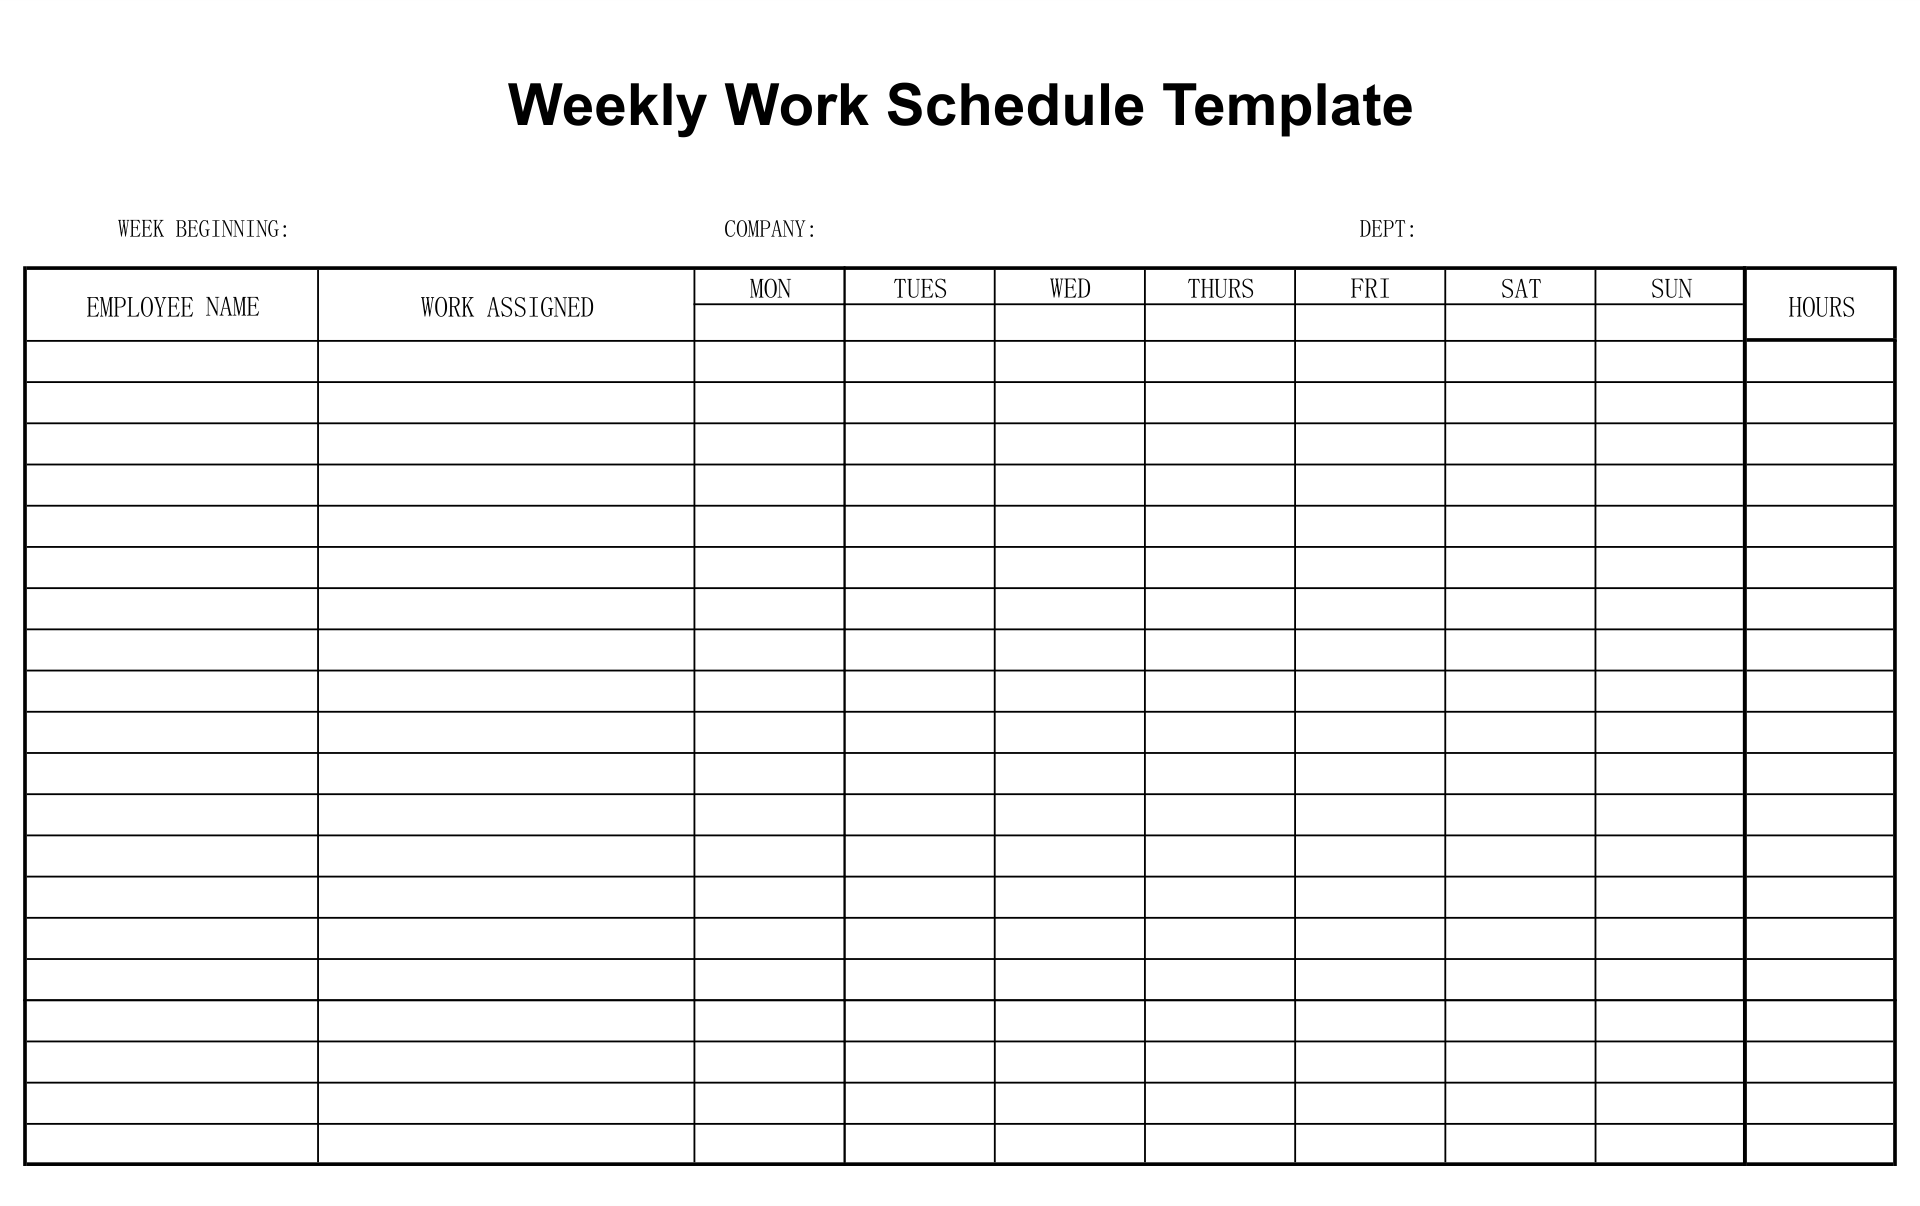 free-weekly-work-schedule-www-ssphealthdev